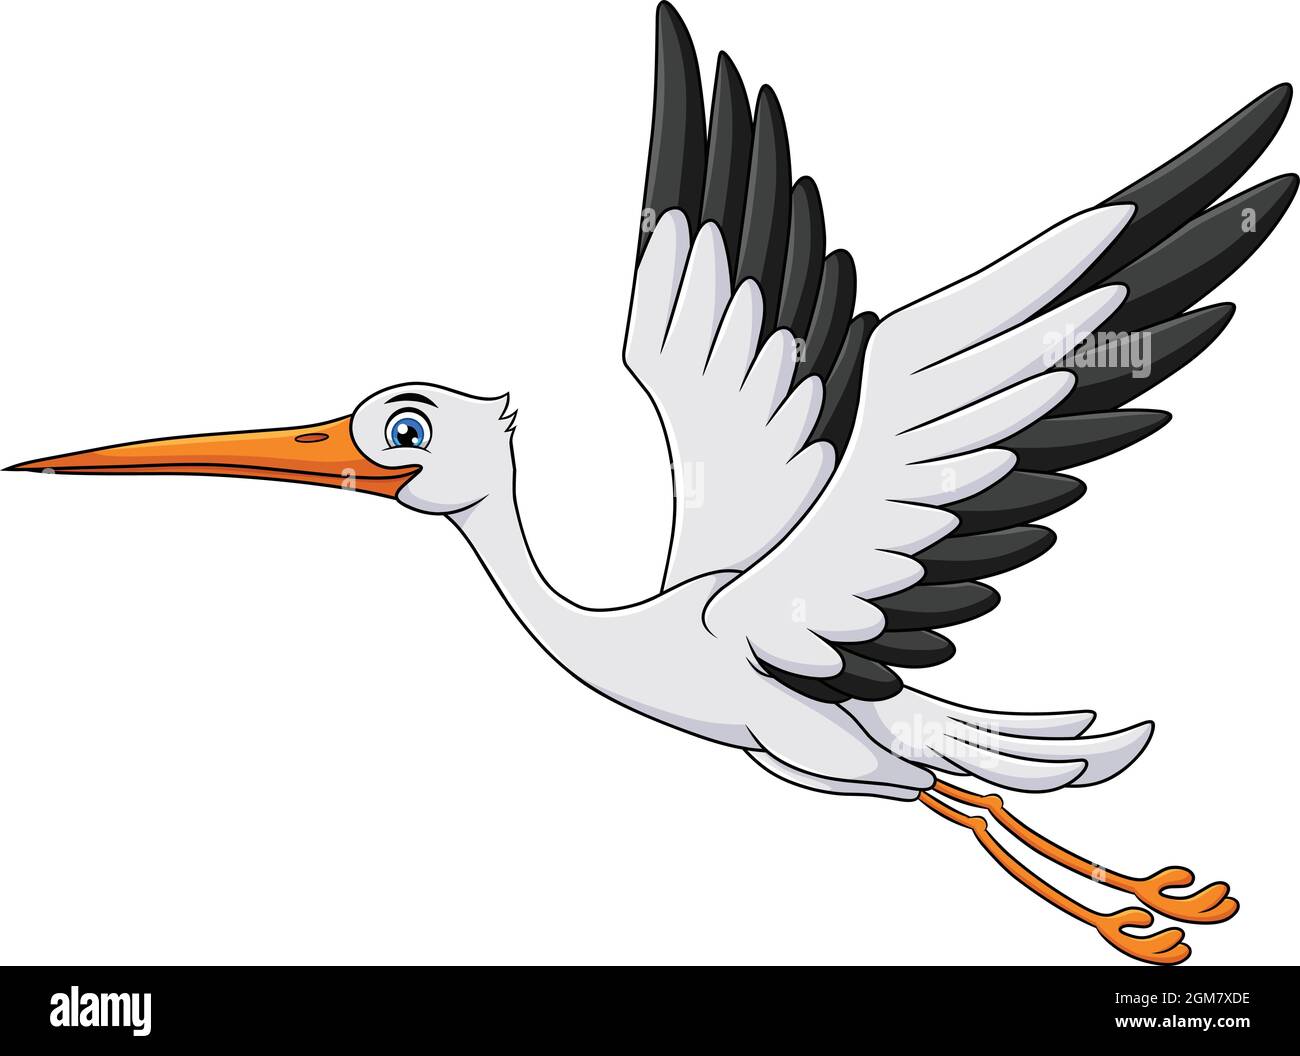 Cute Stork bird cartoon vector illustration Stock Vector